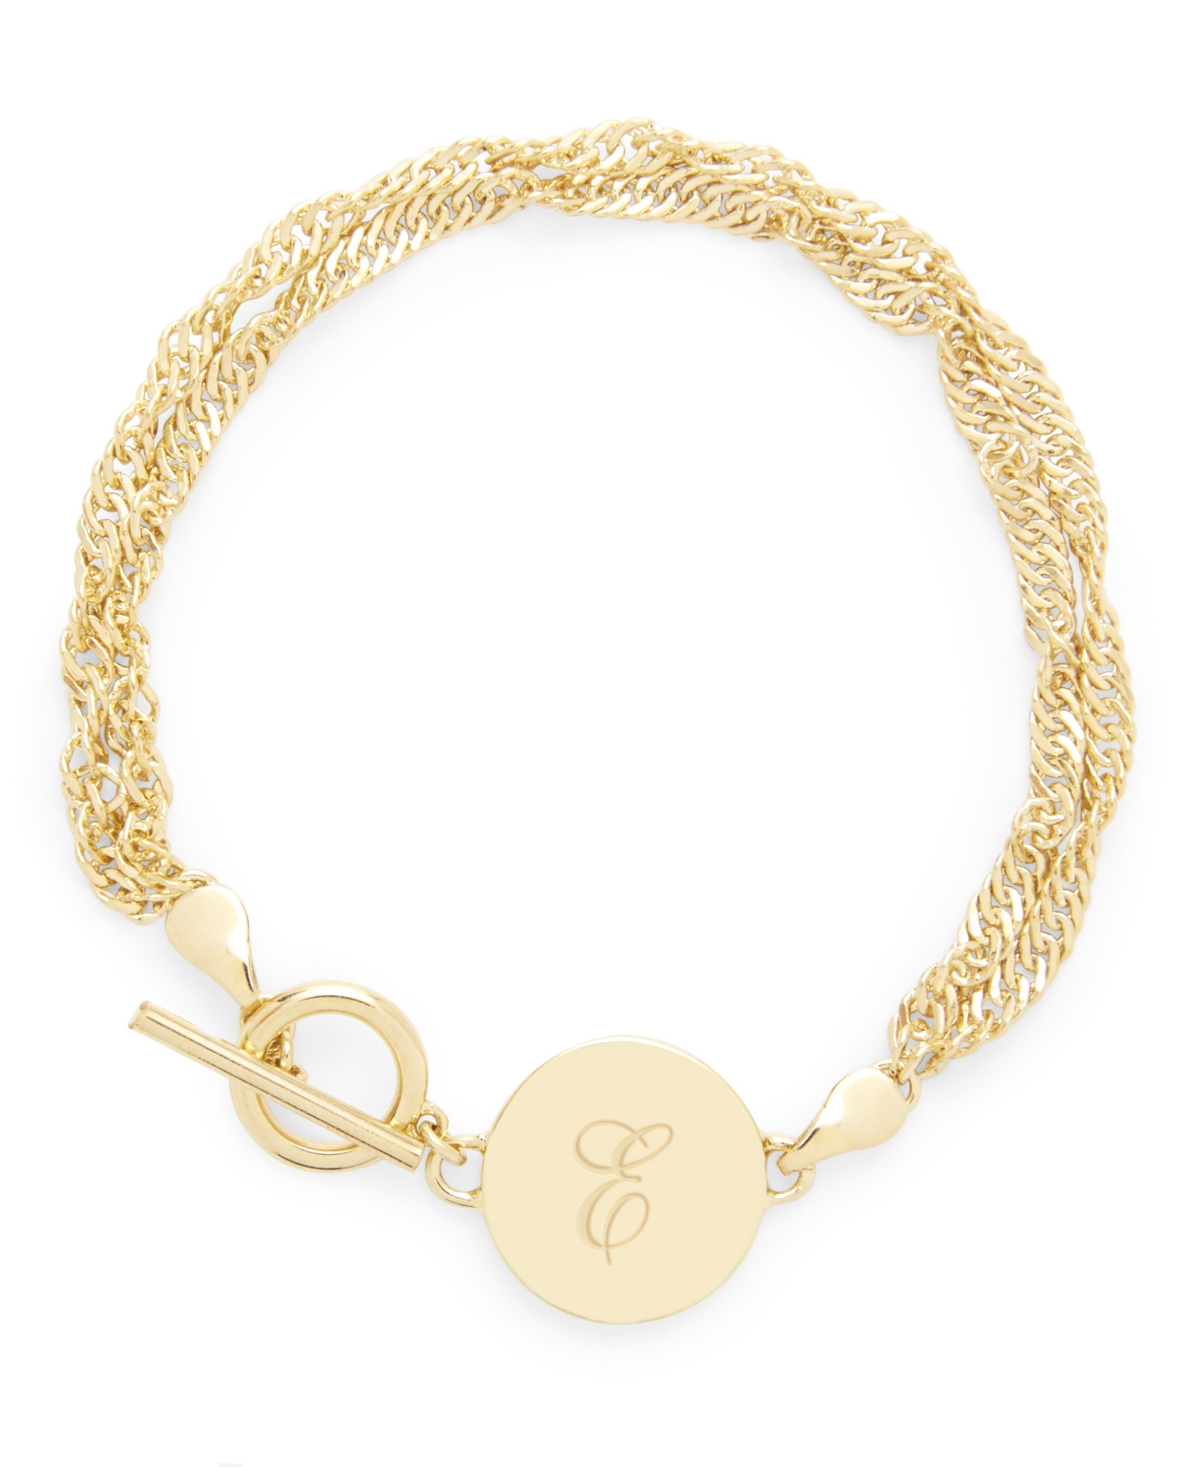 brook & york 14K Gold Plated Sophie Initial Toggle Bracelet